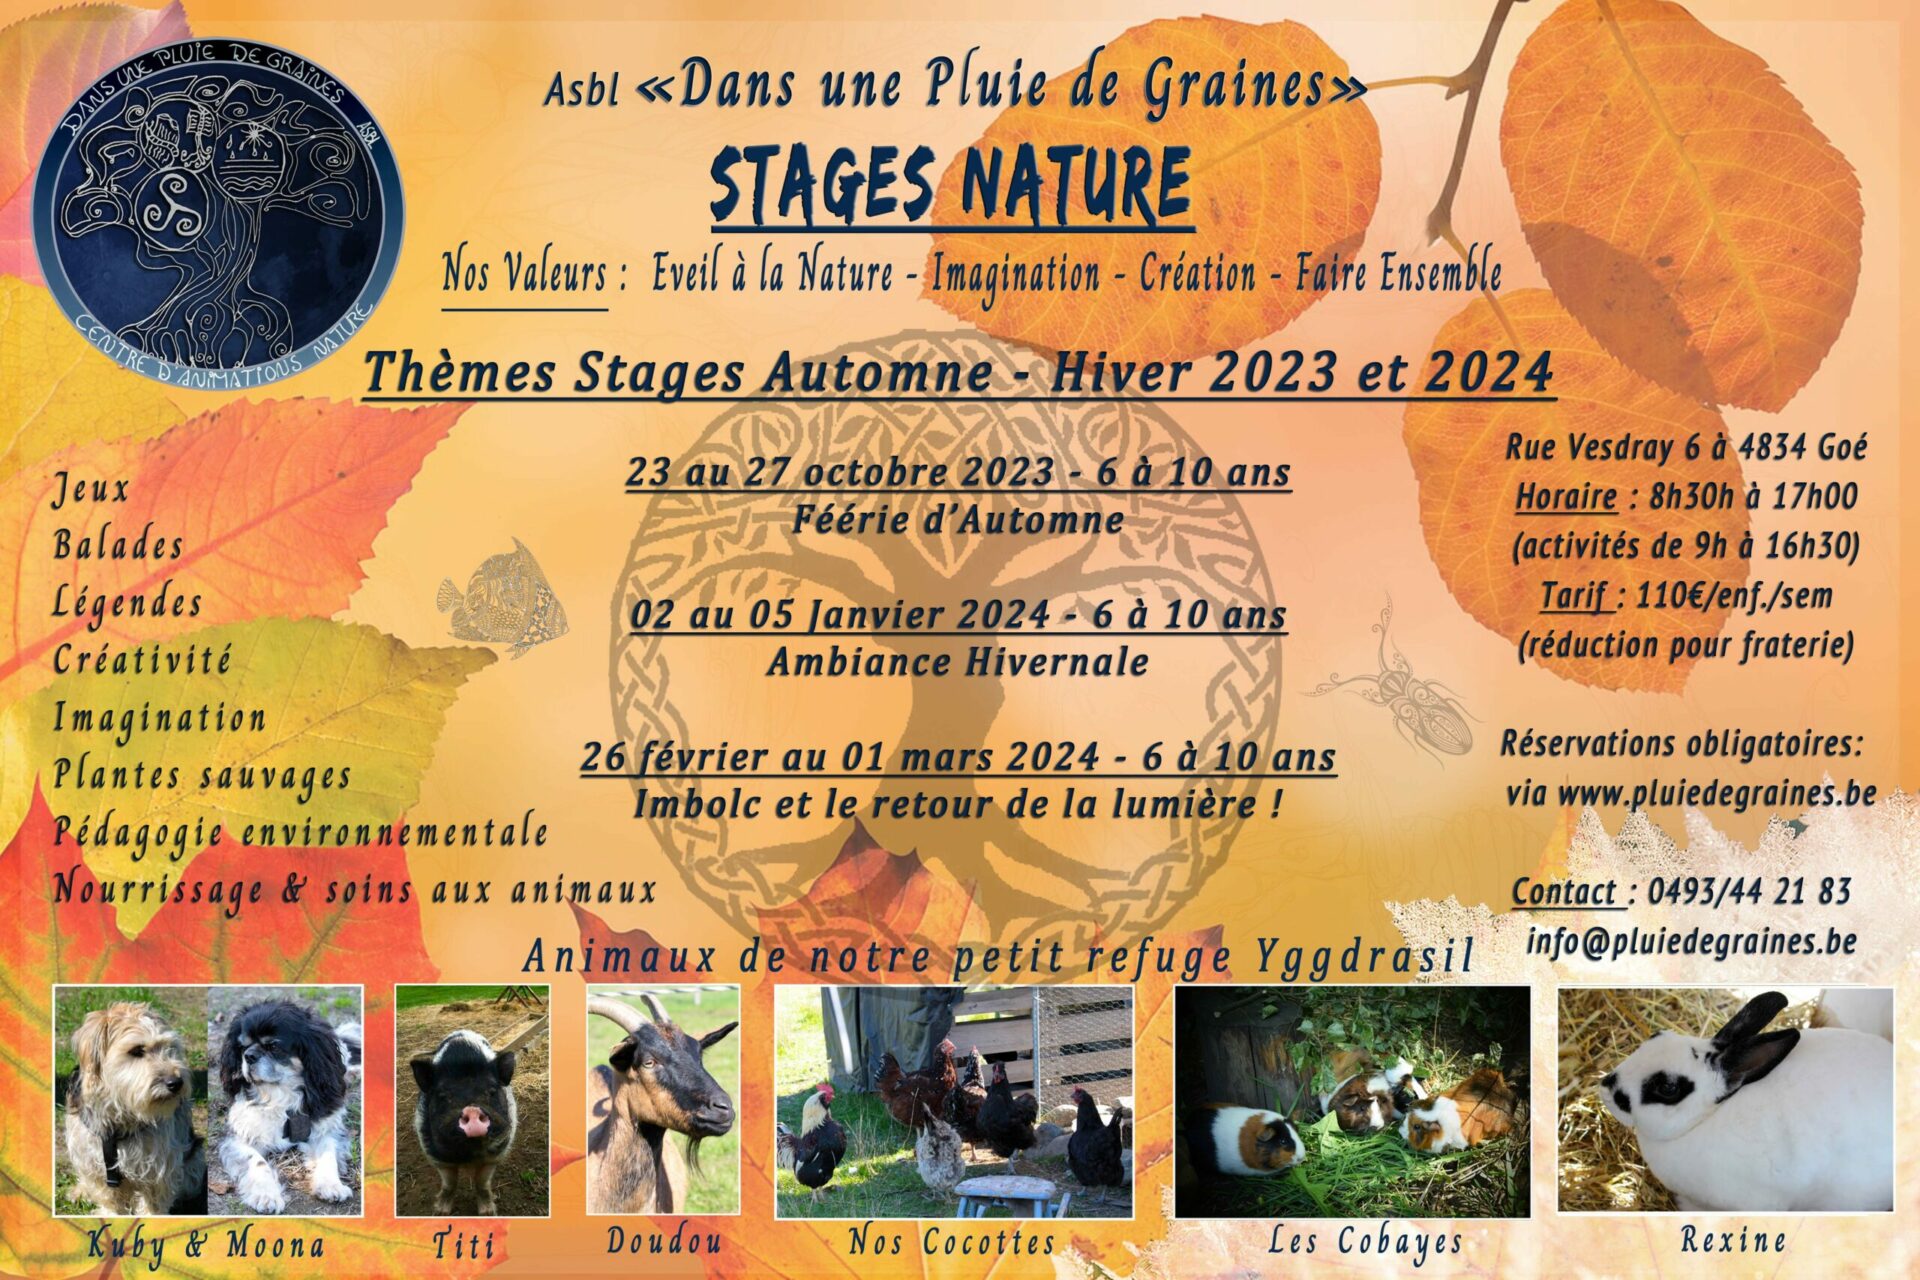 Stage Nature "Féérie d’Automne"